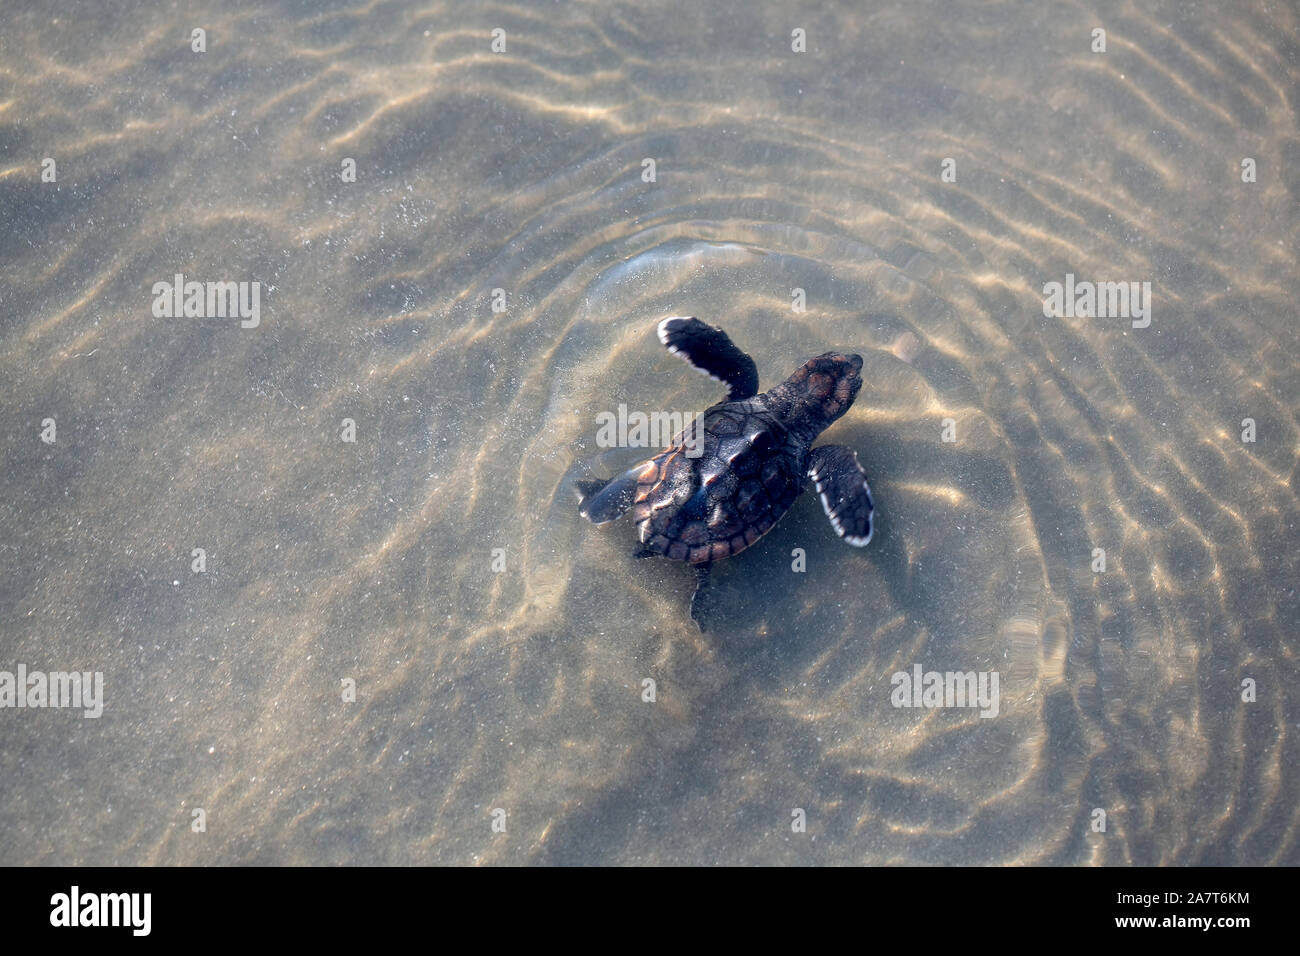 La tortuga de mar realizando su camino al océano después de hervir fuera del nido en Isle of Palms, S.C. Foto de stock